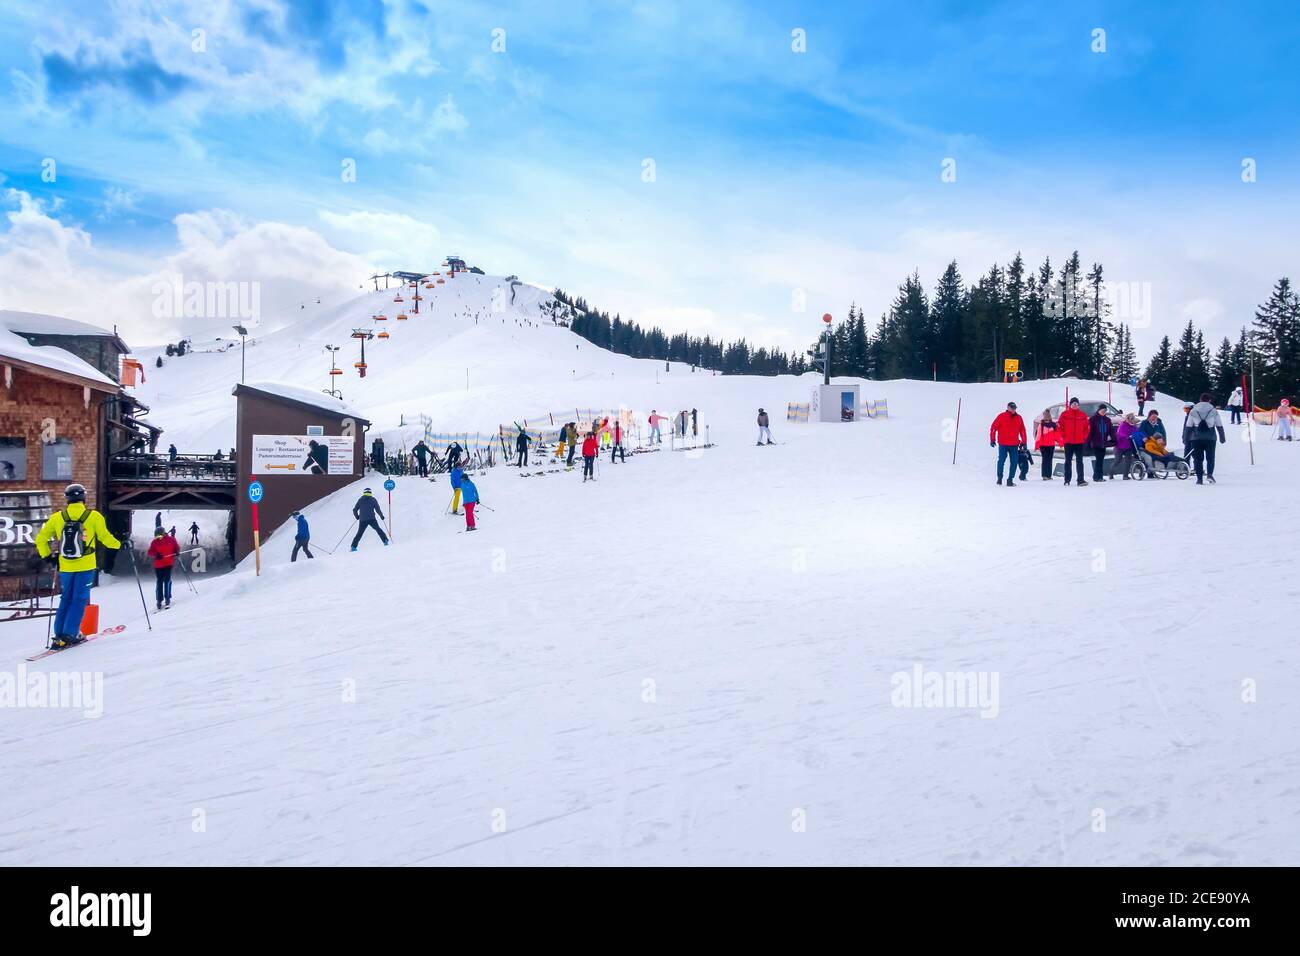 Saalbach, Österreich - 2. März 2020: Skifahrer und Snowboarder auf der Skipiste, Holzrestaurant dahinter Stockfoto